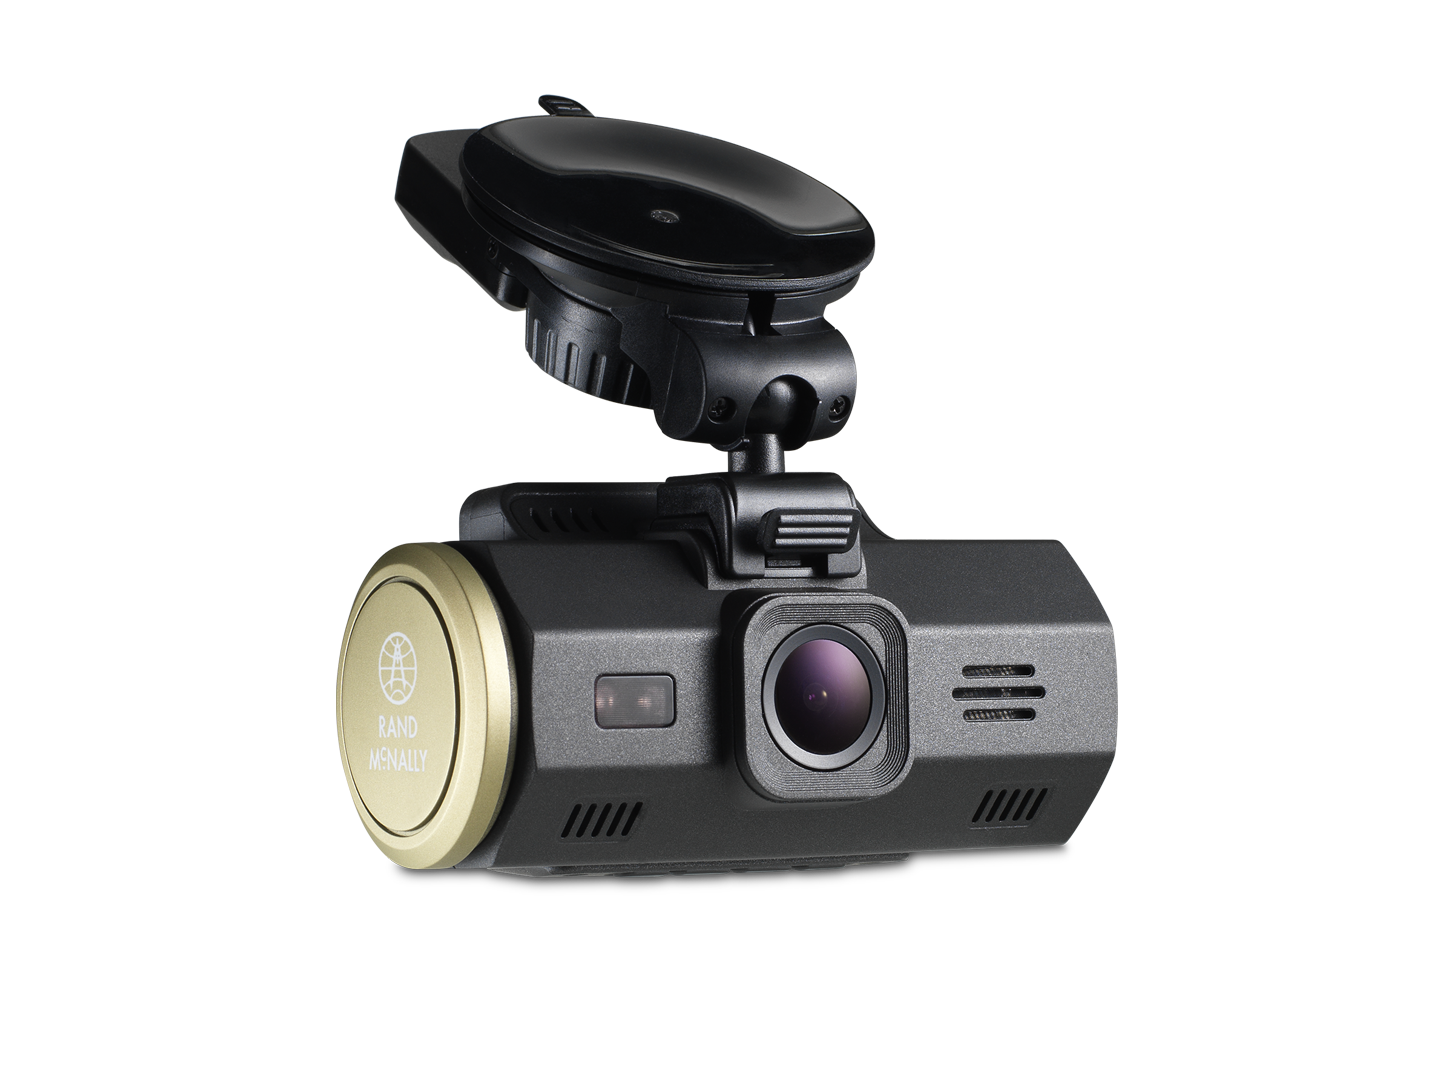 Drive регистратор. Dash cam m500. Angle Driving Recorder видеорегистратор. Автомобильный видеорегистратор Charome t9 Mini app Road Camera (серый). Видеорегистратор на белом фоне.